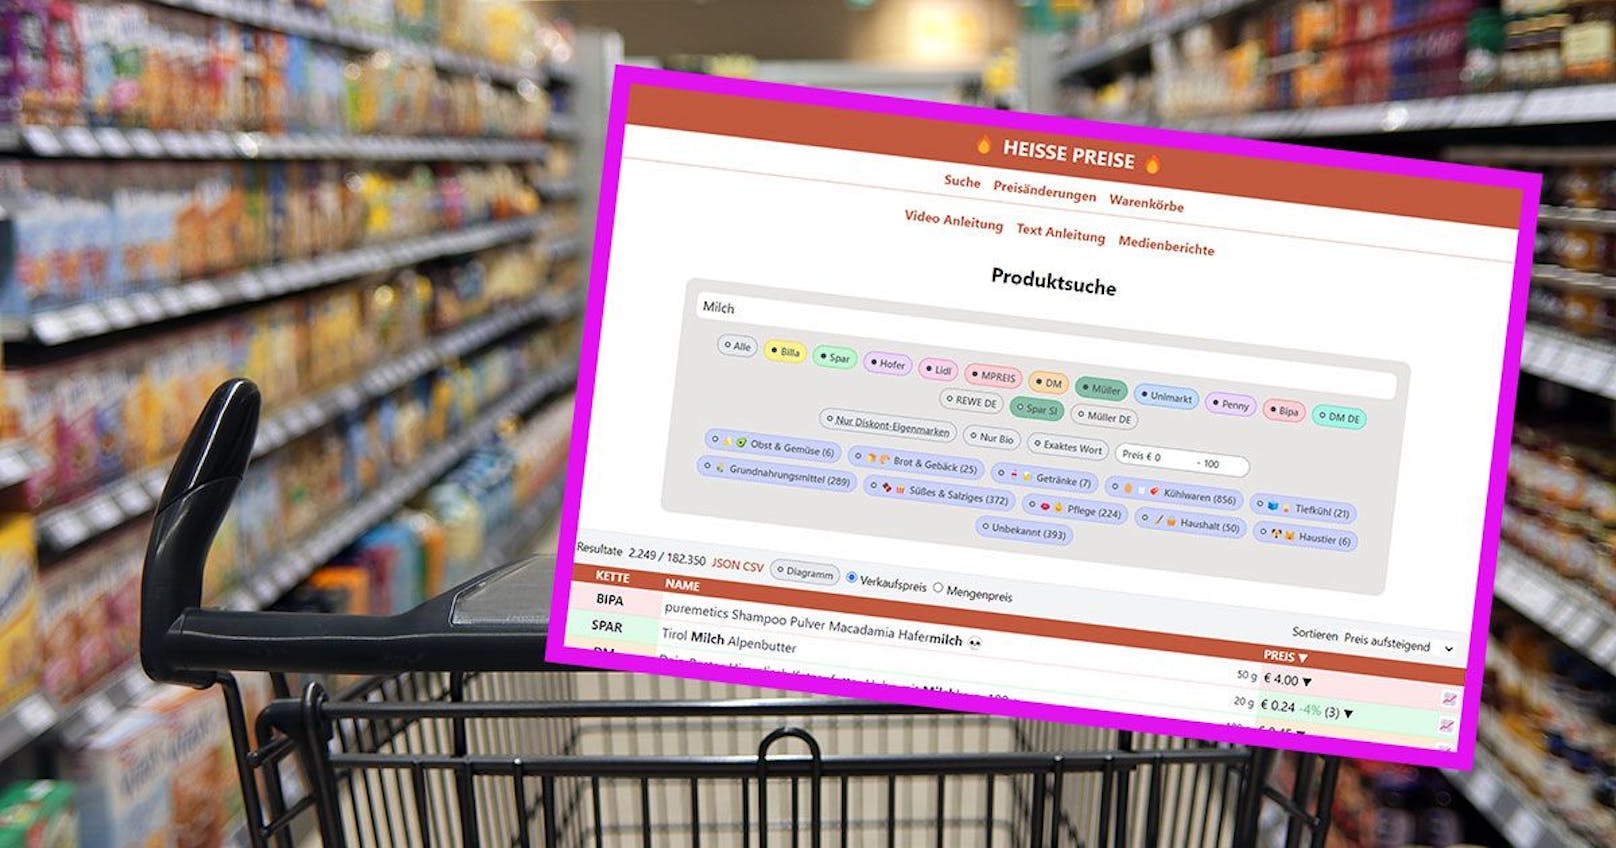 Auf der Webseite "Heisse Preise" werden Lebensmittelpreise mit einem Klick miteinander verglichen.